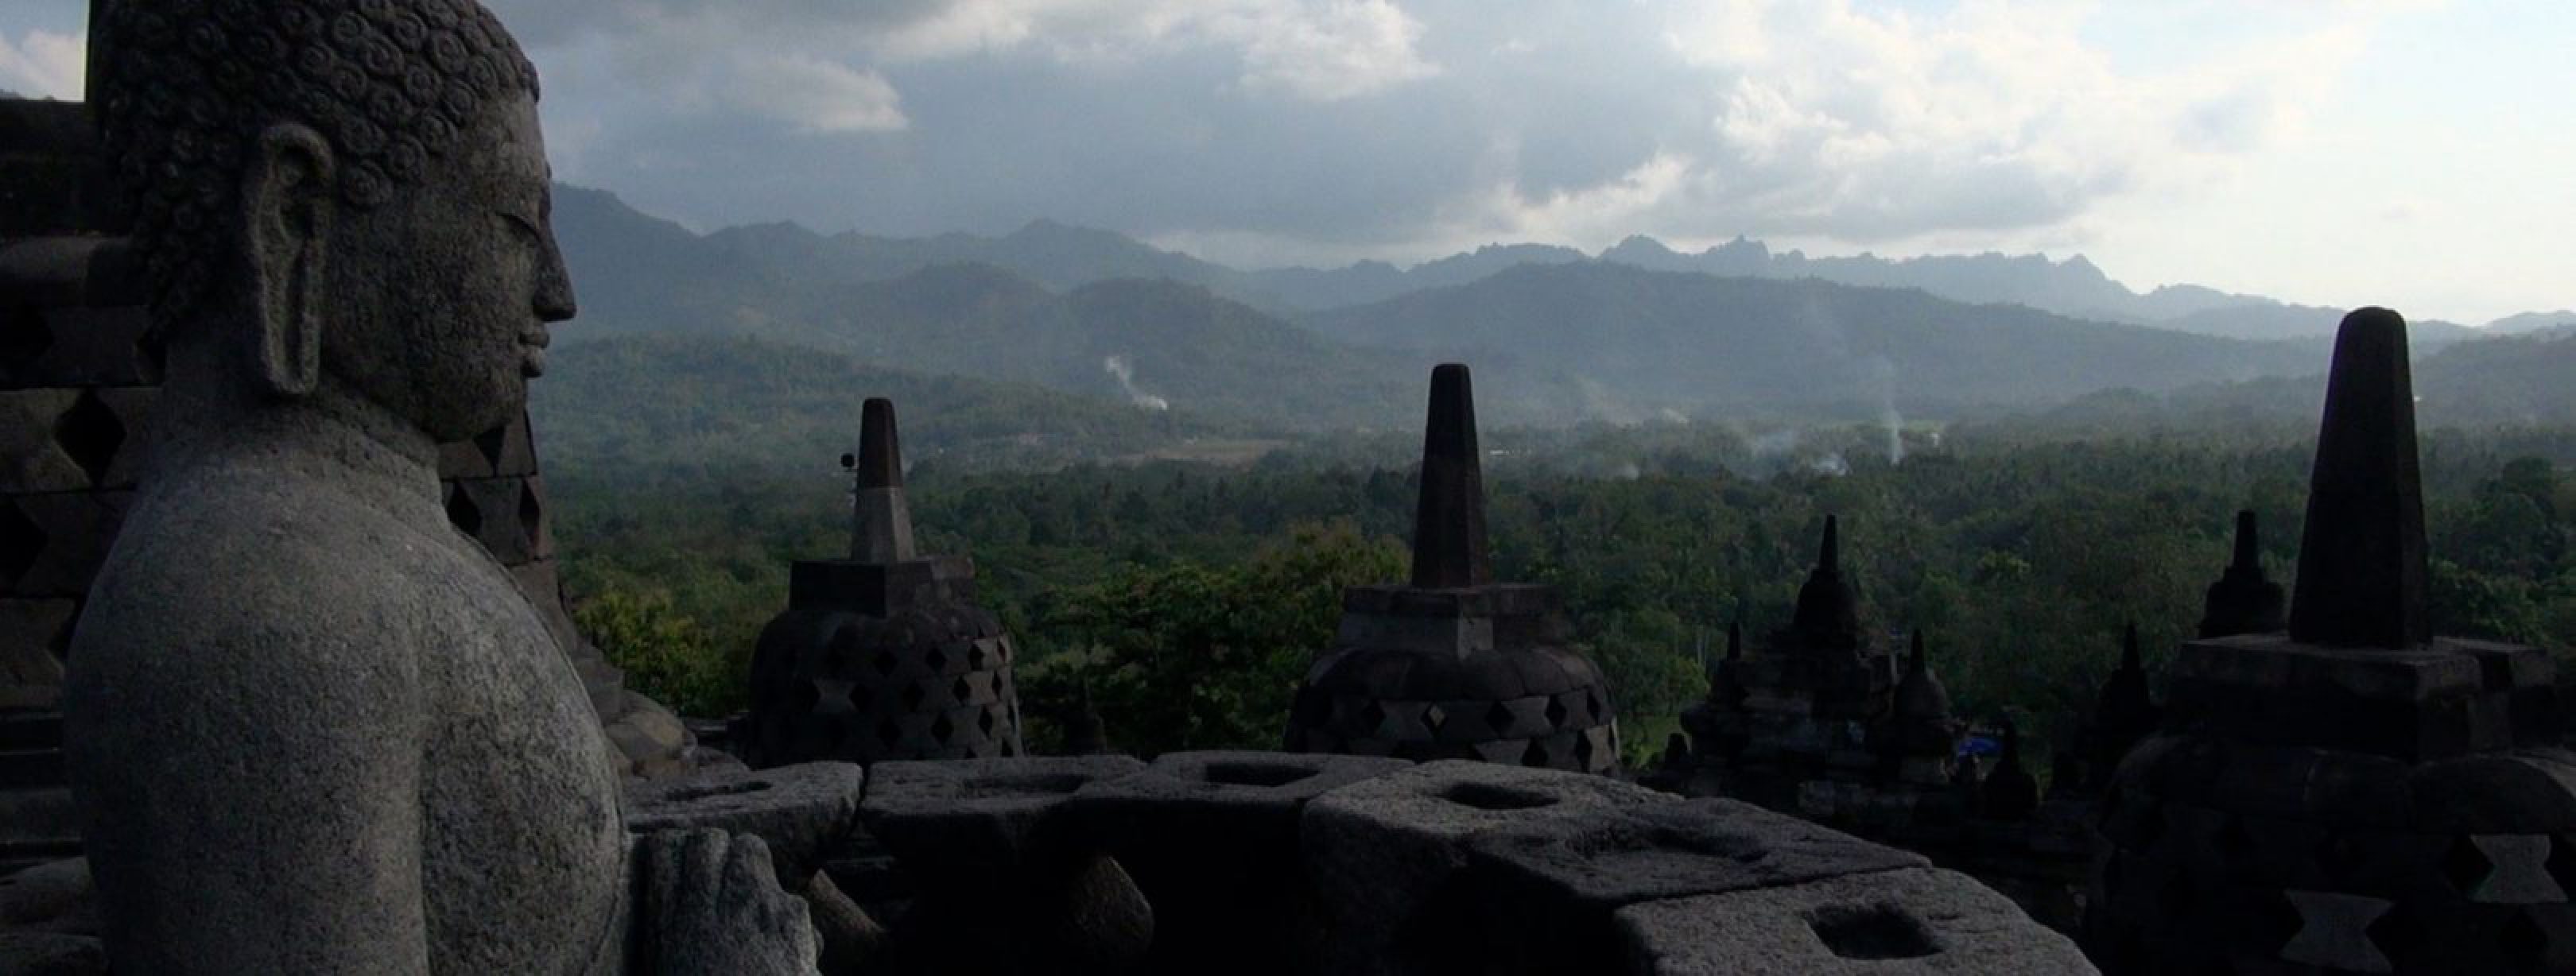 tv-Gespannen-Stilte.-Boeddhisten-in-Indonesie-Borobudur-header.jpg